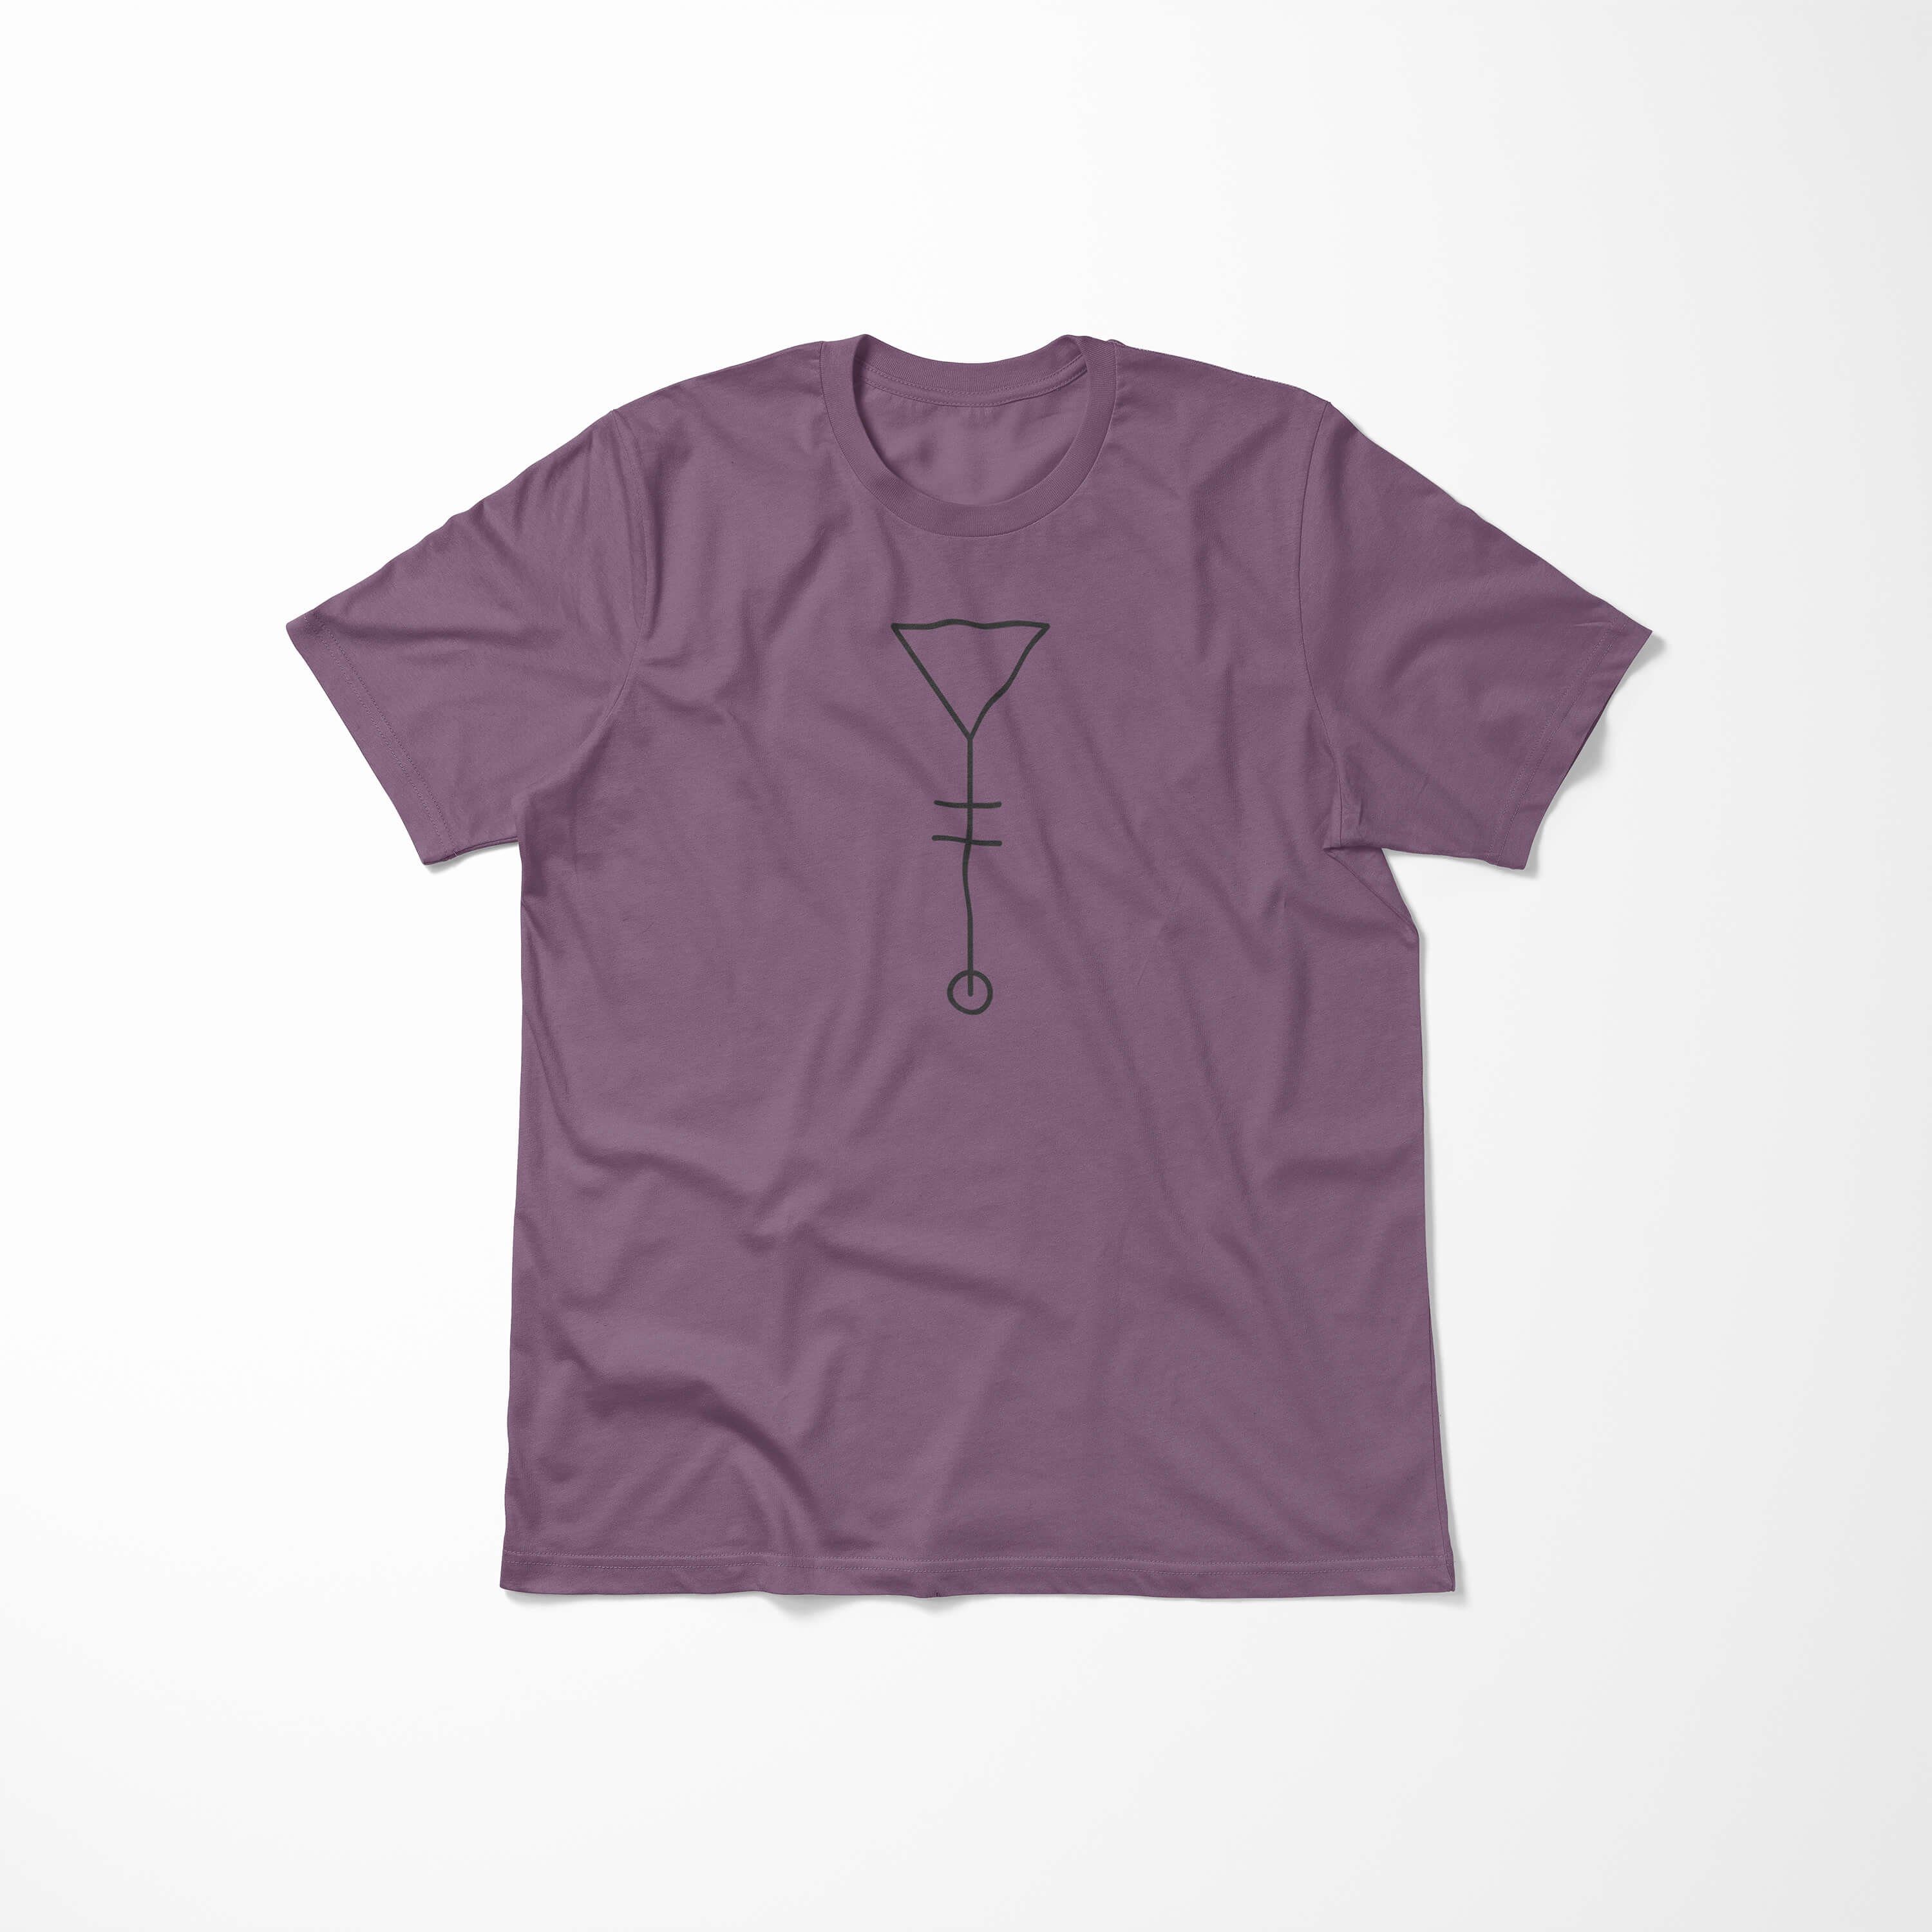 Struktur Sinus angenehmer T-Shirt Shiraz No.0024 Premium feine Serie Alchemy Tragekomfort Symbole Art T-Shirt